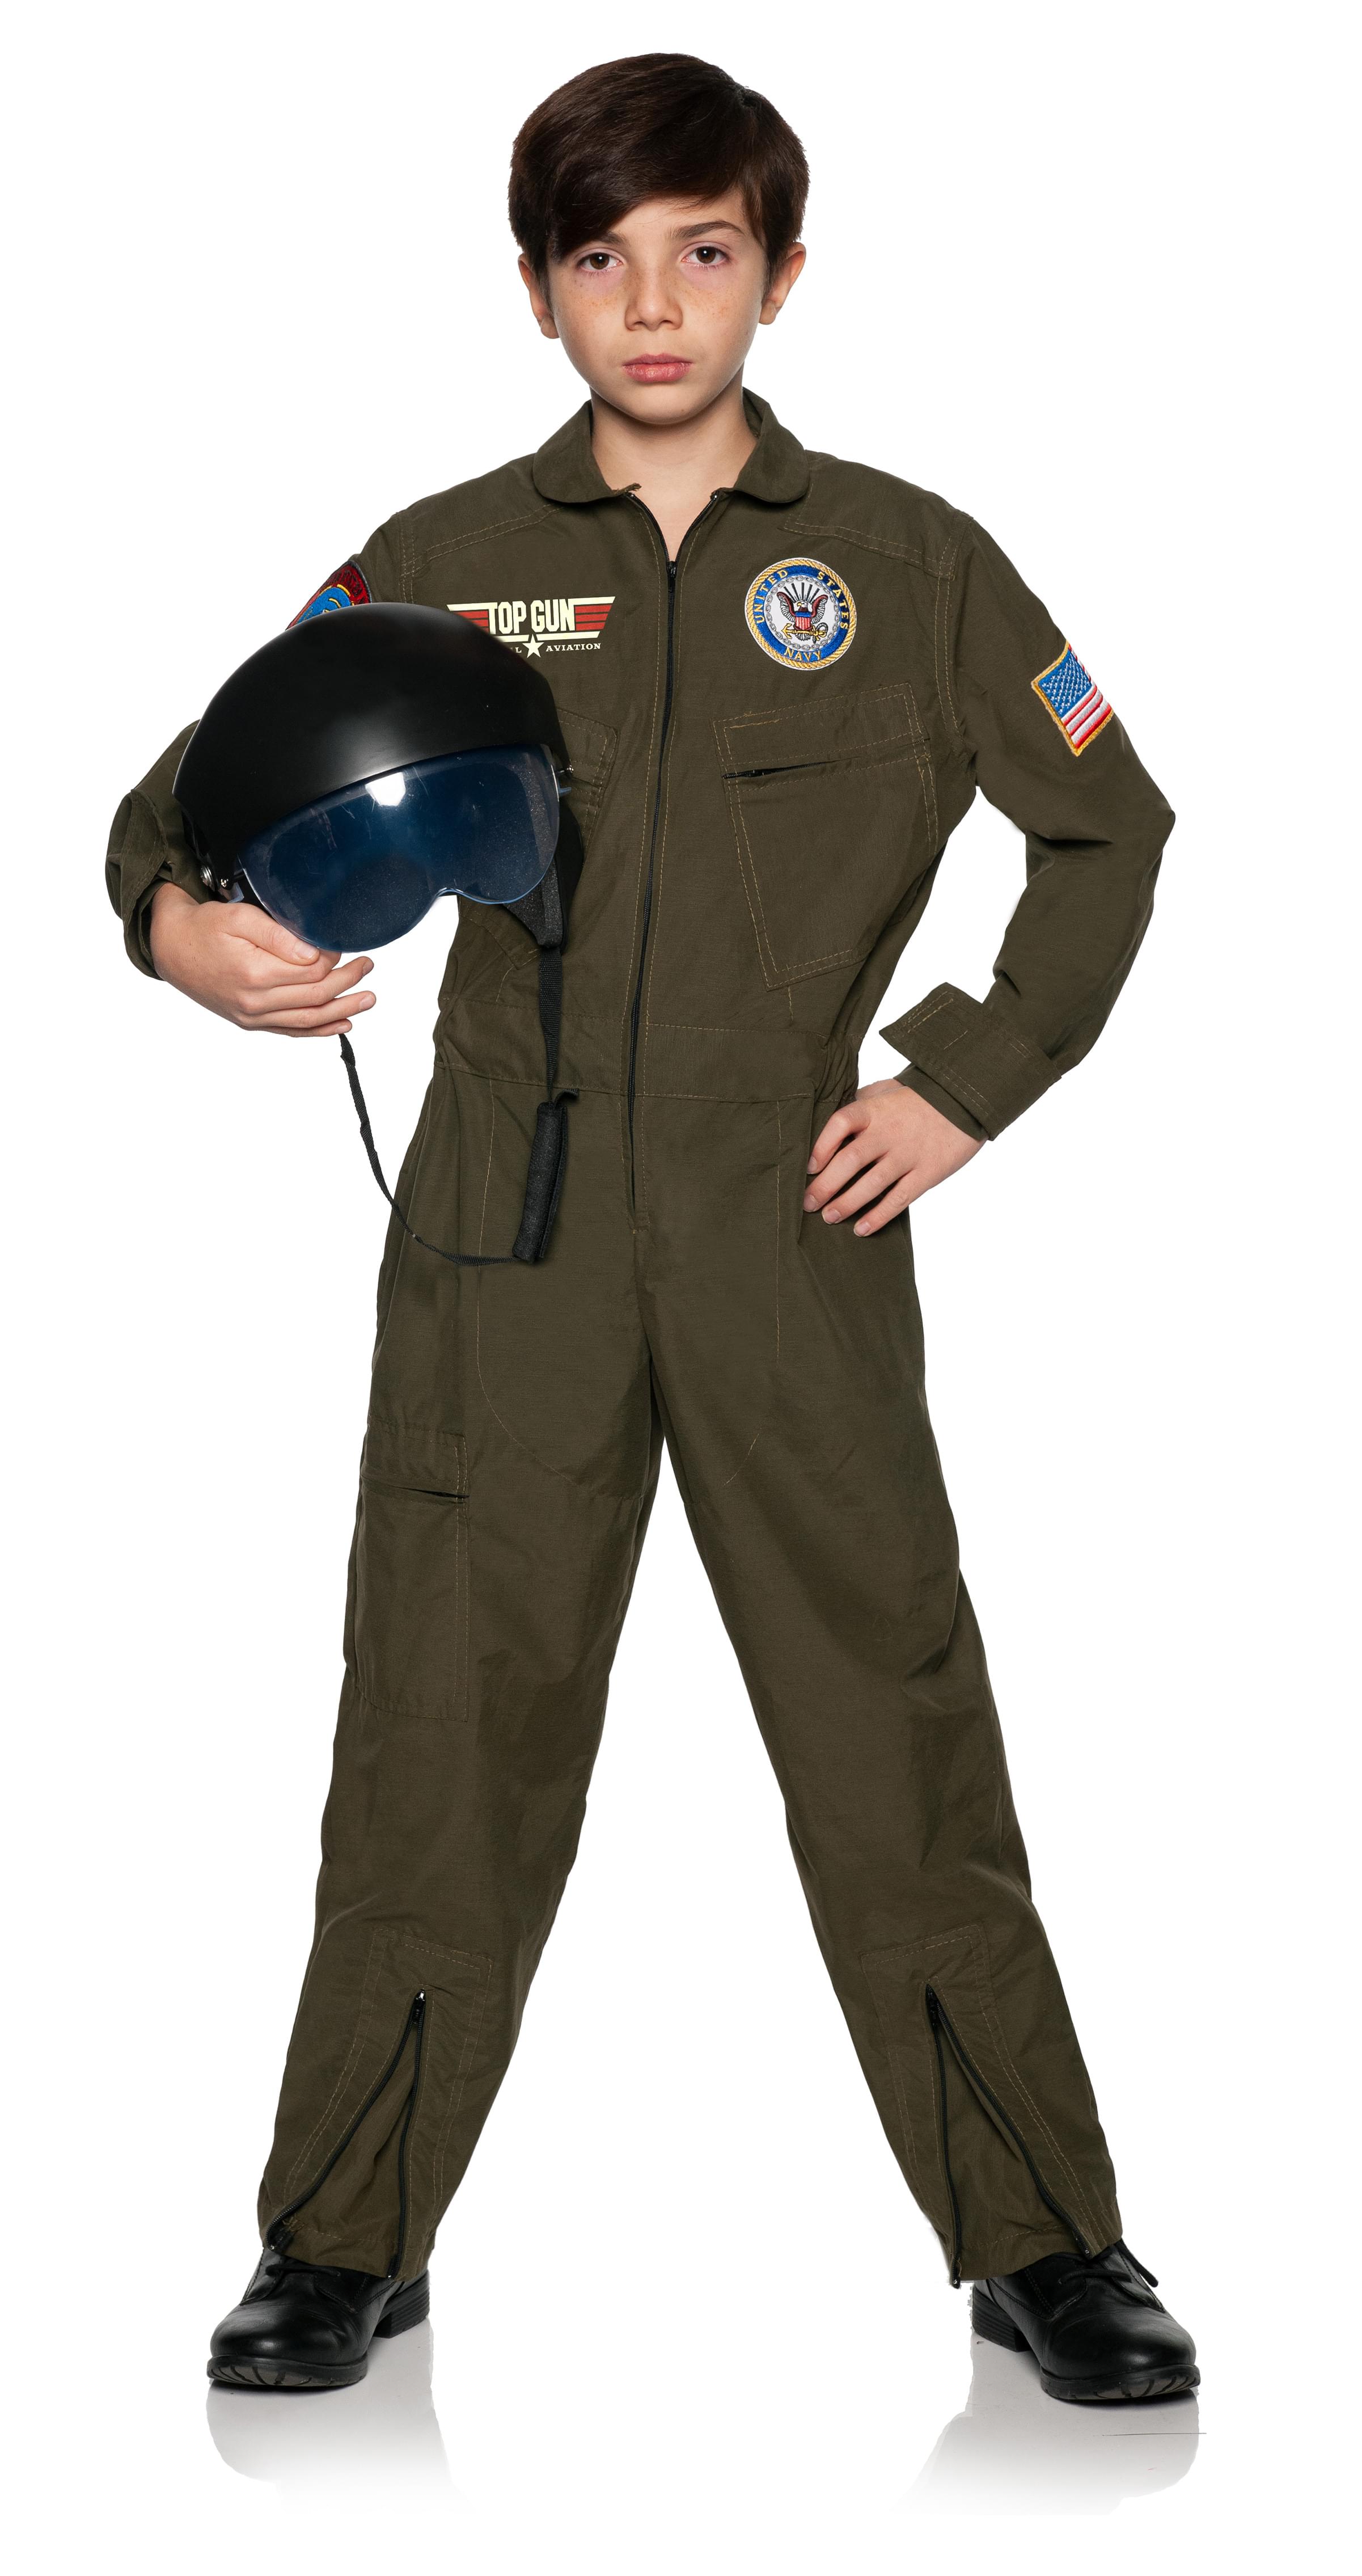 Photos - Fancy Dress NAVY Top Gun Pilot Jumpsuit Child Costume UDW-27685S-C 